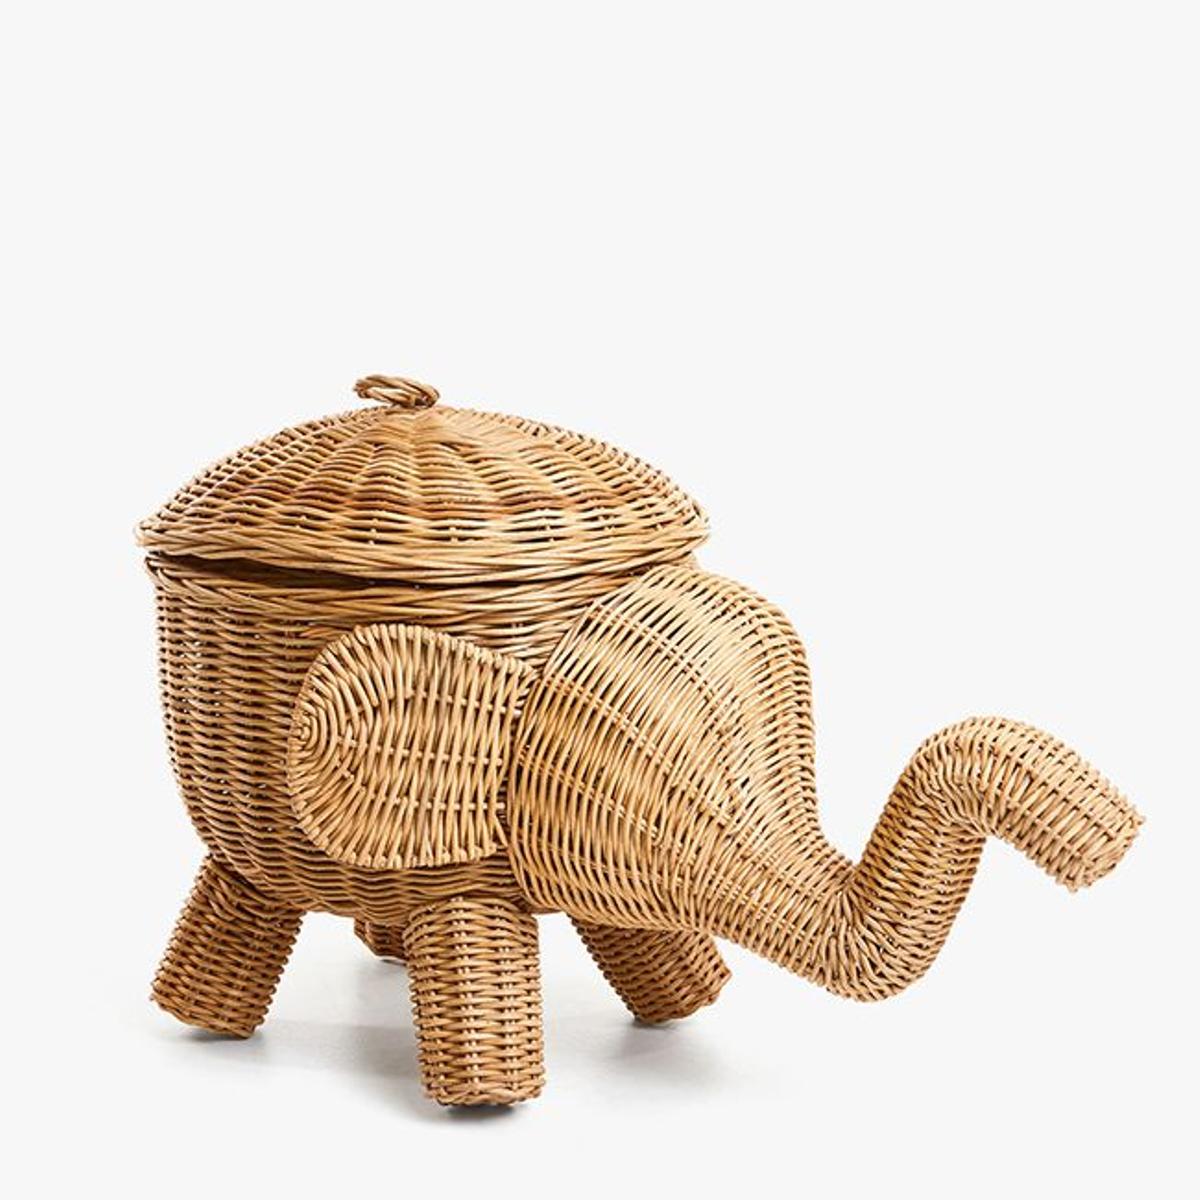 La cesta con forma de elefante del salón de Sara Carbonero - Woman